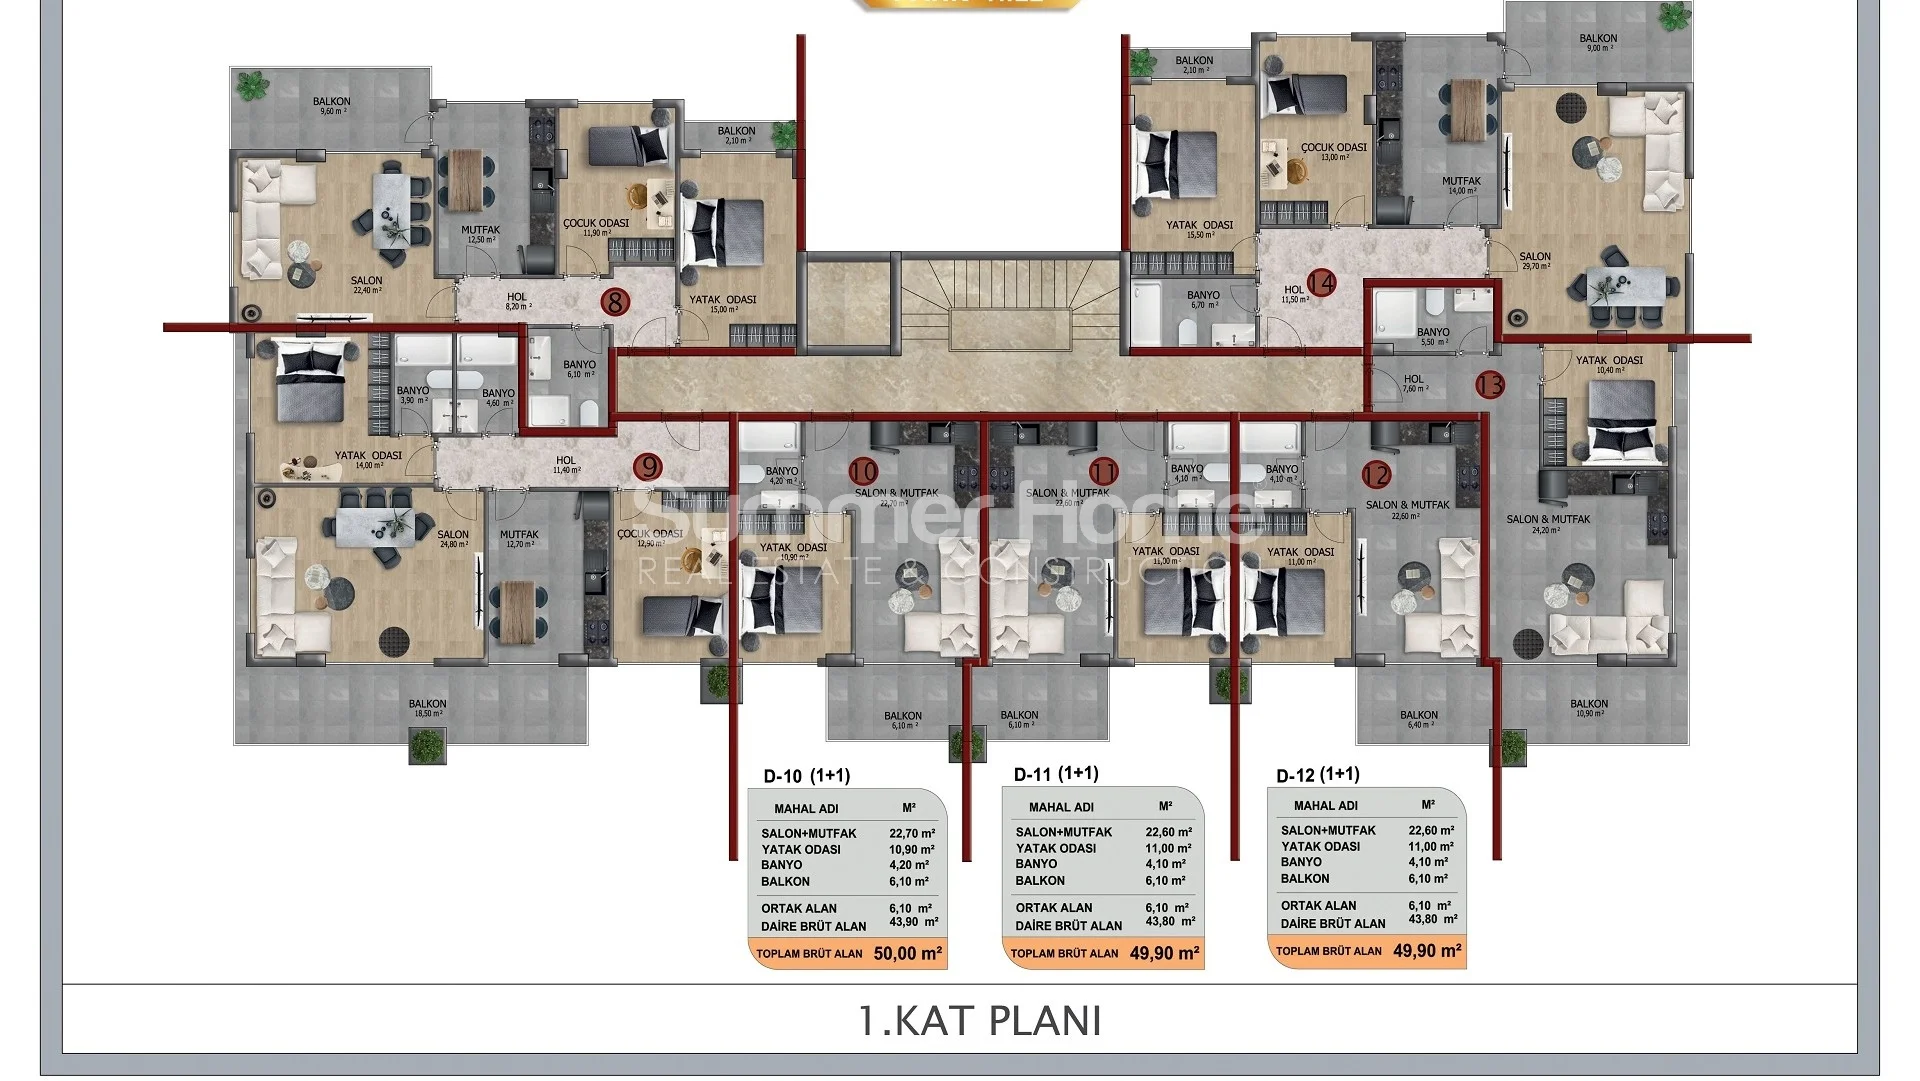 Apartamente moderne për shitje në Obën rurale plan - 5